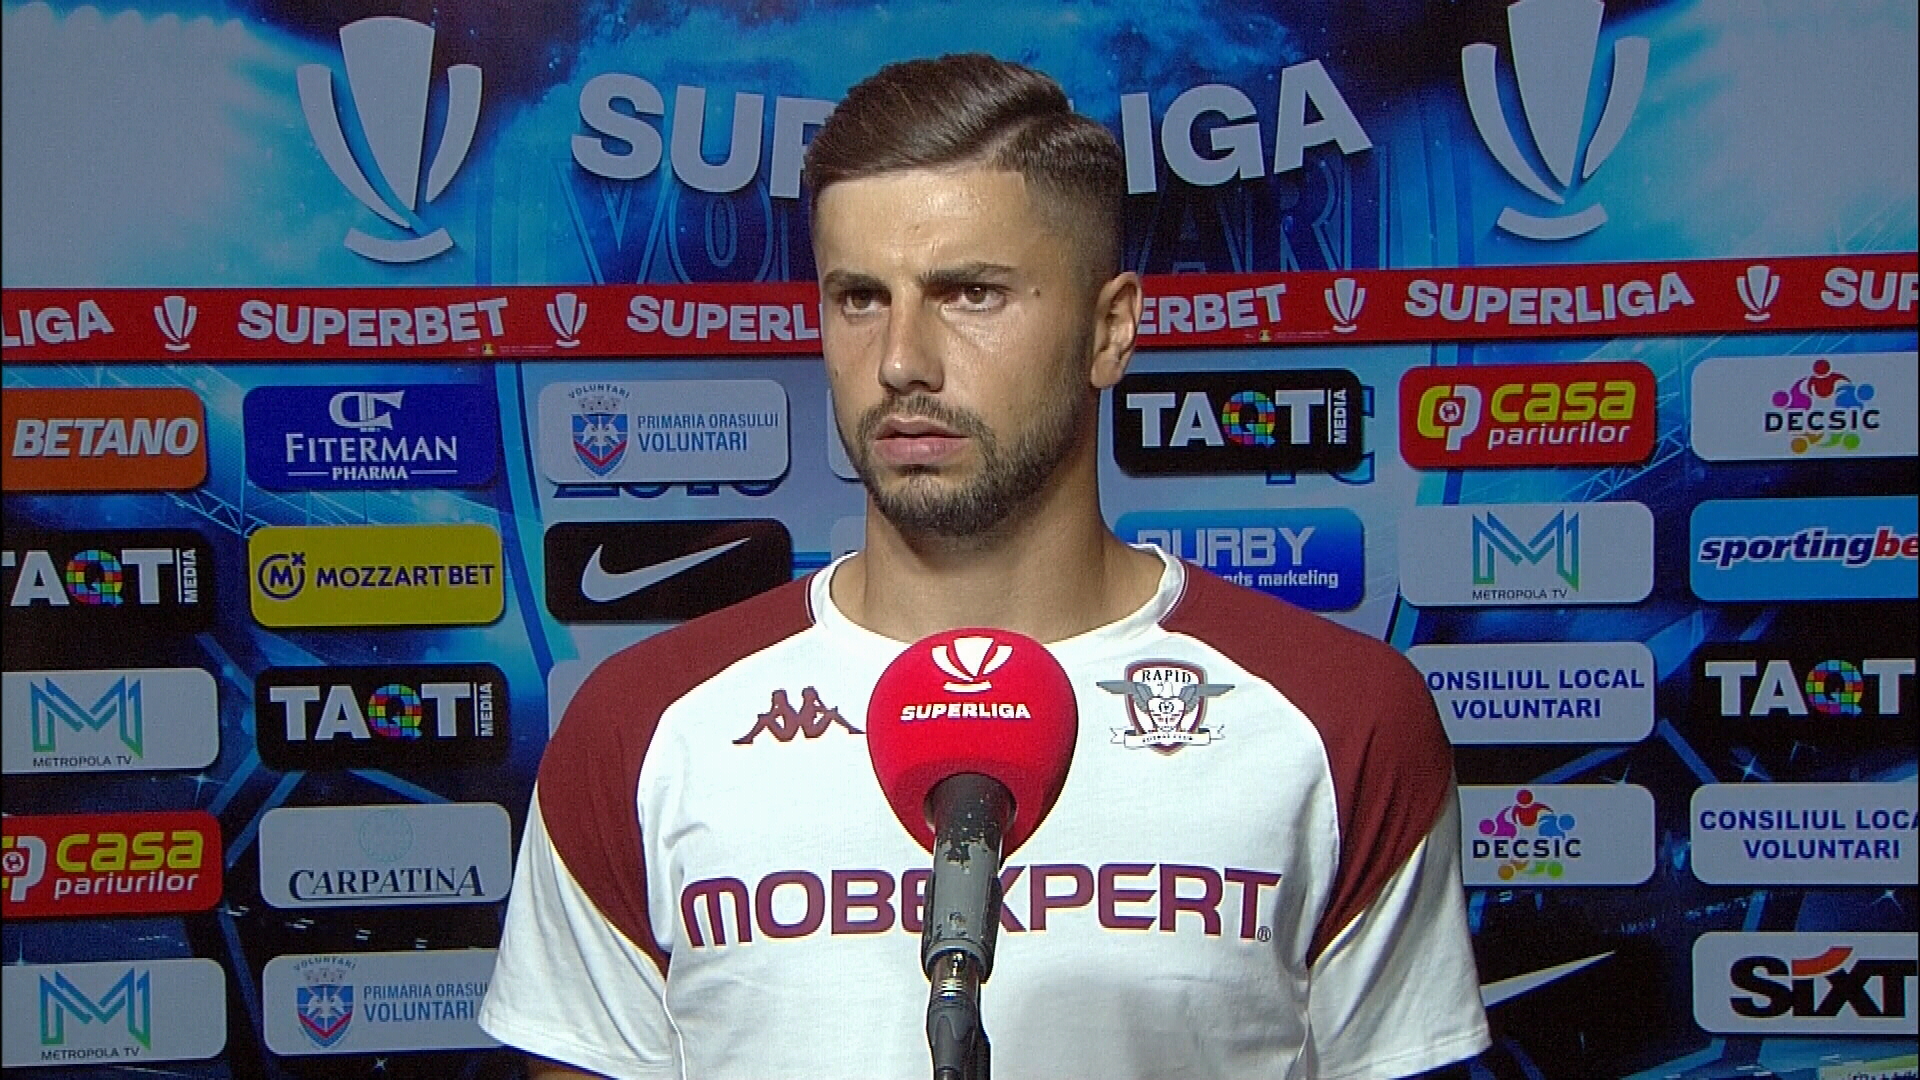 ”Au fost dezamăgiți fanii?”. Răspunsul dat de Horațiu Moldovan, după remiza cu Oțelul: ”Am întâlnit o echipă foarte bună”